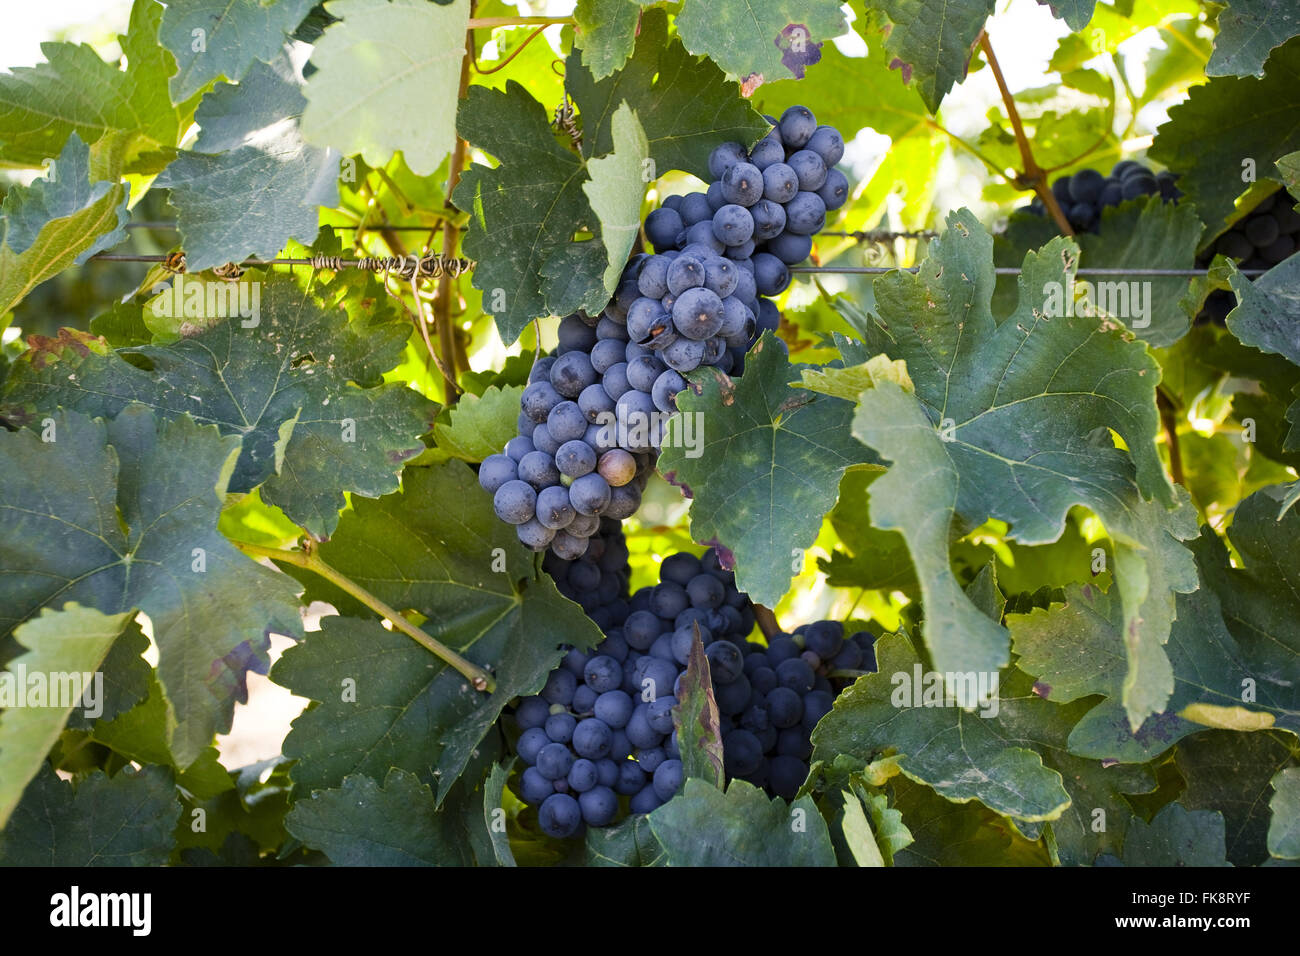 Bewässerten Anbau von Trauben Aragones entworfen, die Herstellung von Wein Stockfoto